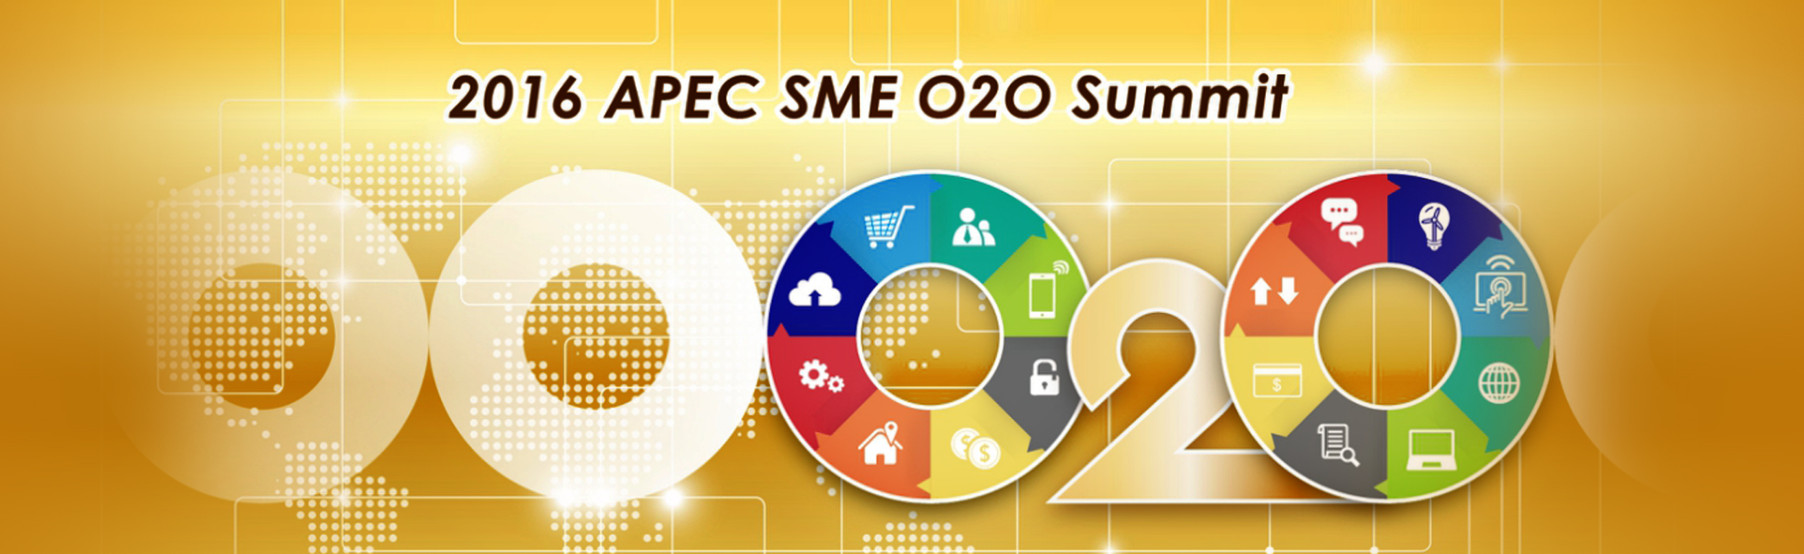 APEC SME O2O Summit - Taipei